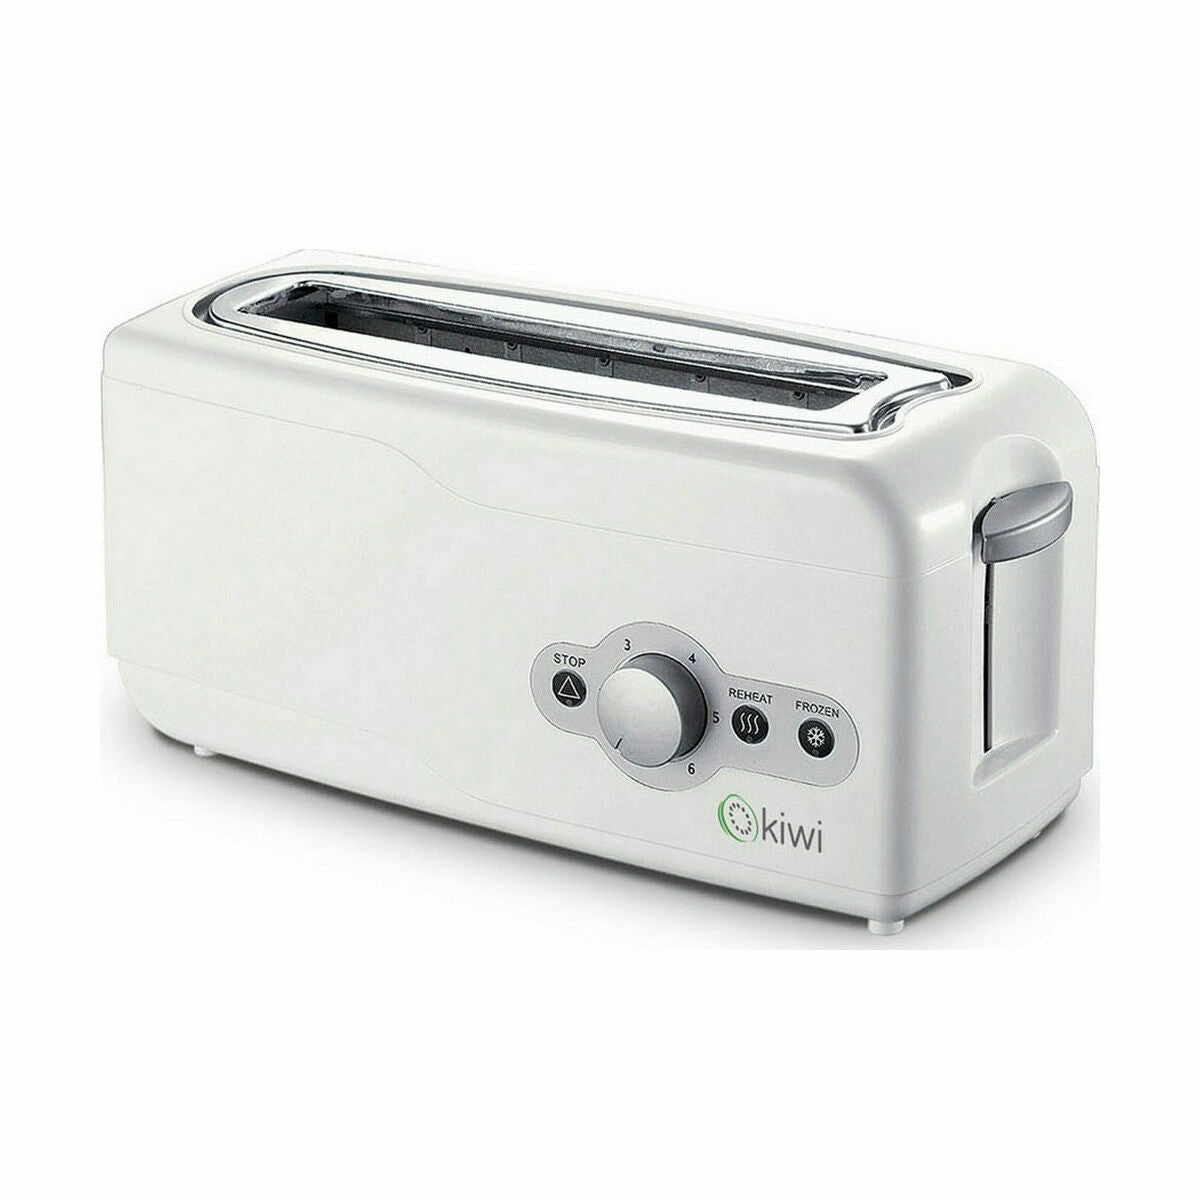 Kaufe Toaster Kiwi Weiß 750 W bei AWK Flagship um € 119.00